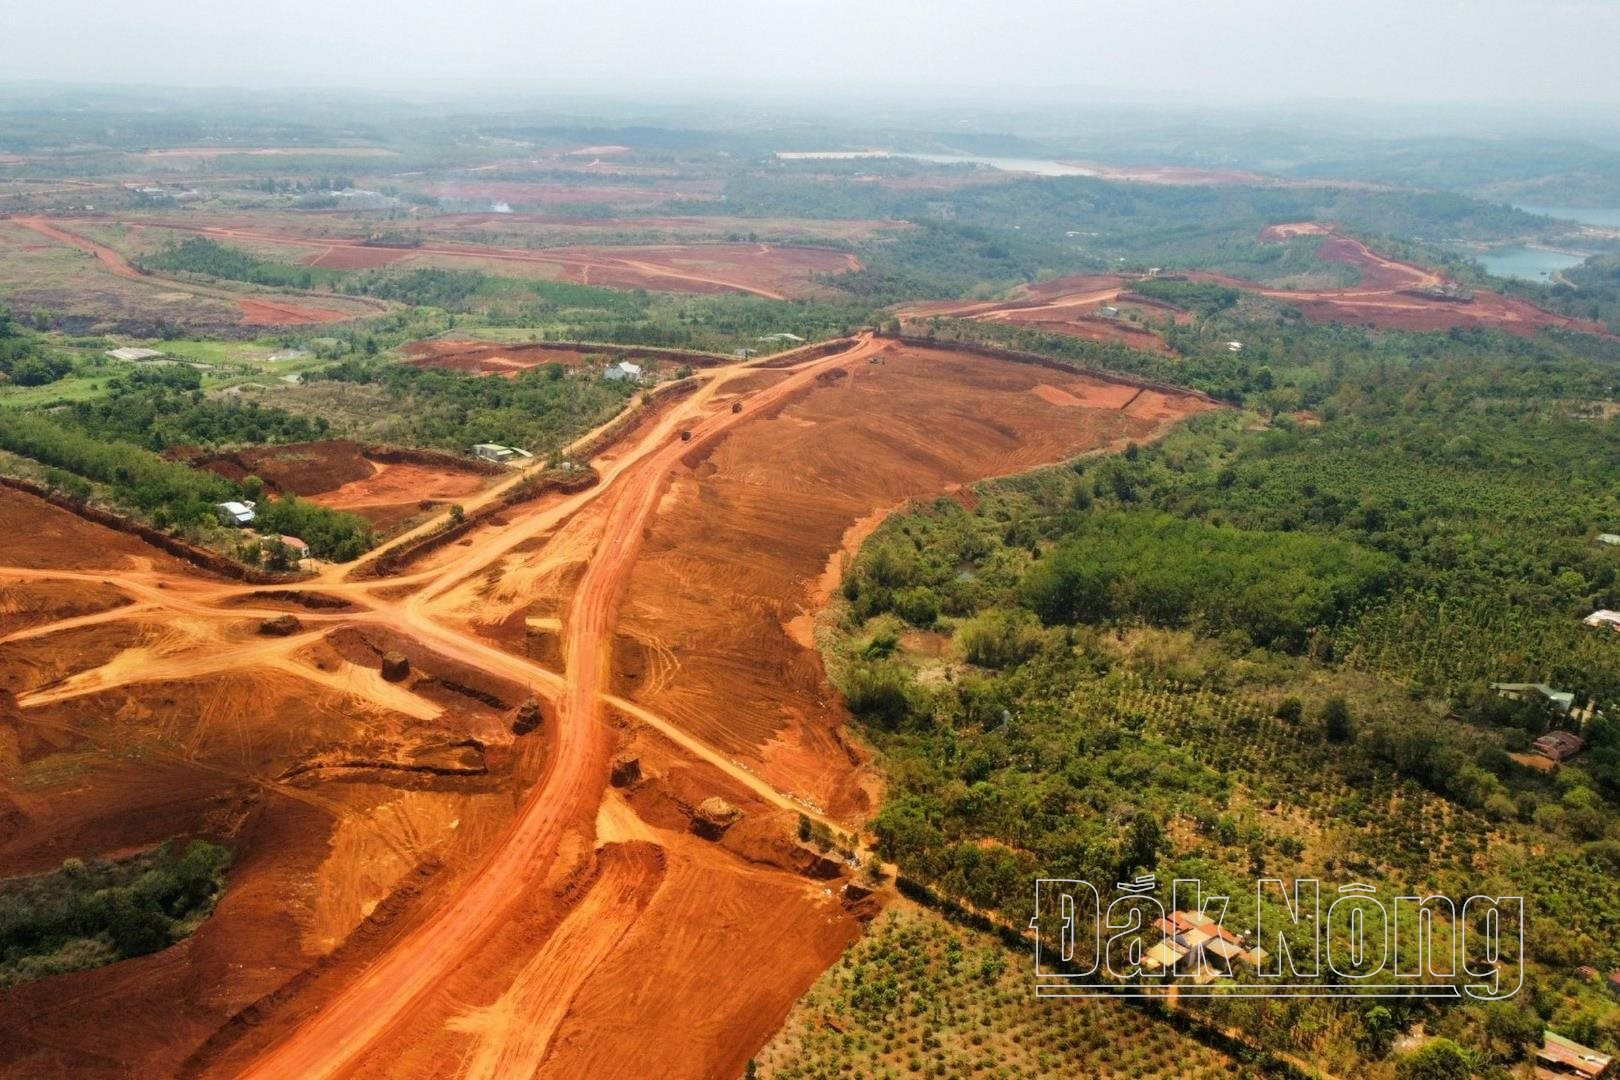 Trữ lượng quặng bô xít đang chiếm khoảng 27% diện tích tự nhiên của toàn tỉnh Đắk Nông